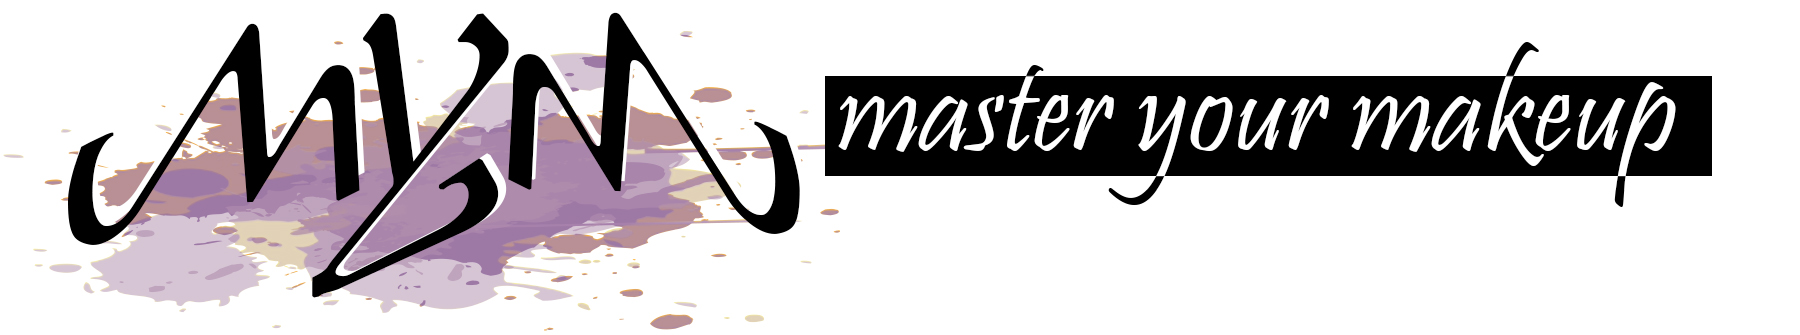 Master Your Makeup Logo 009